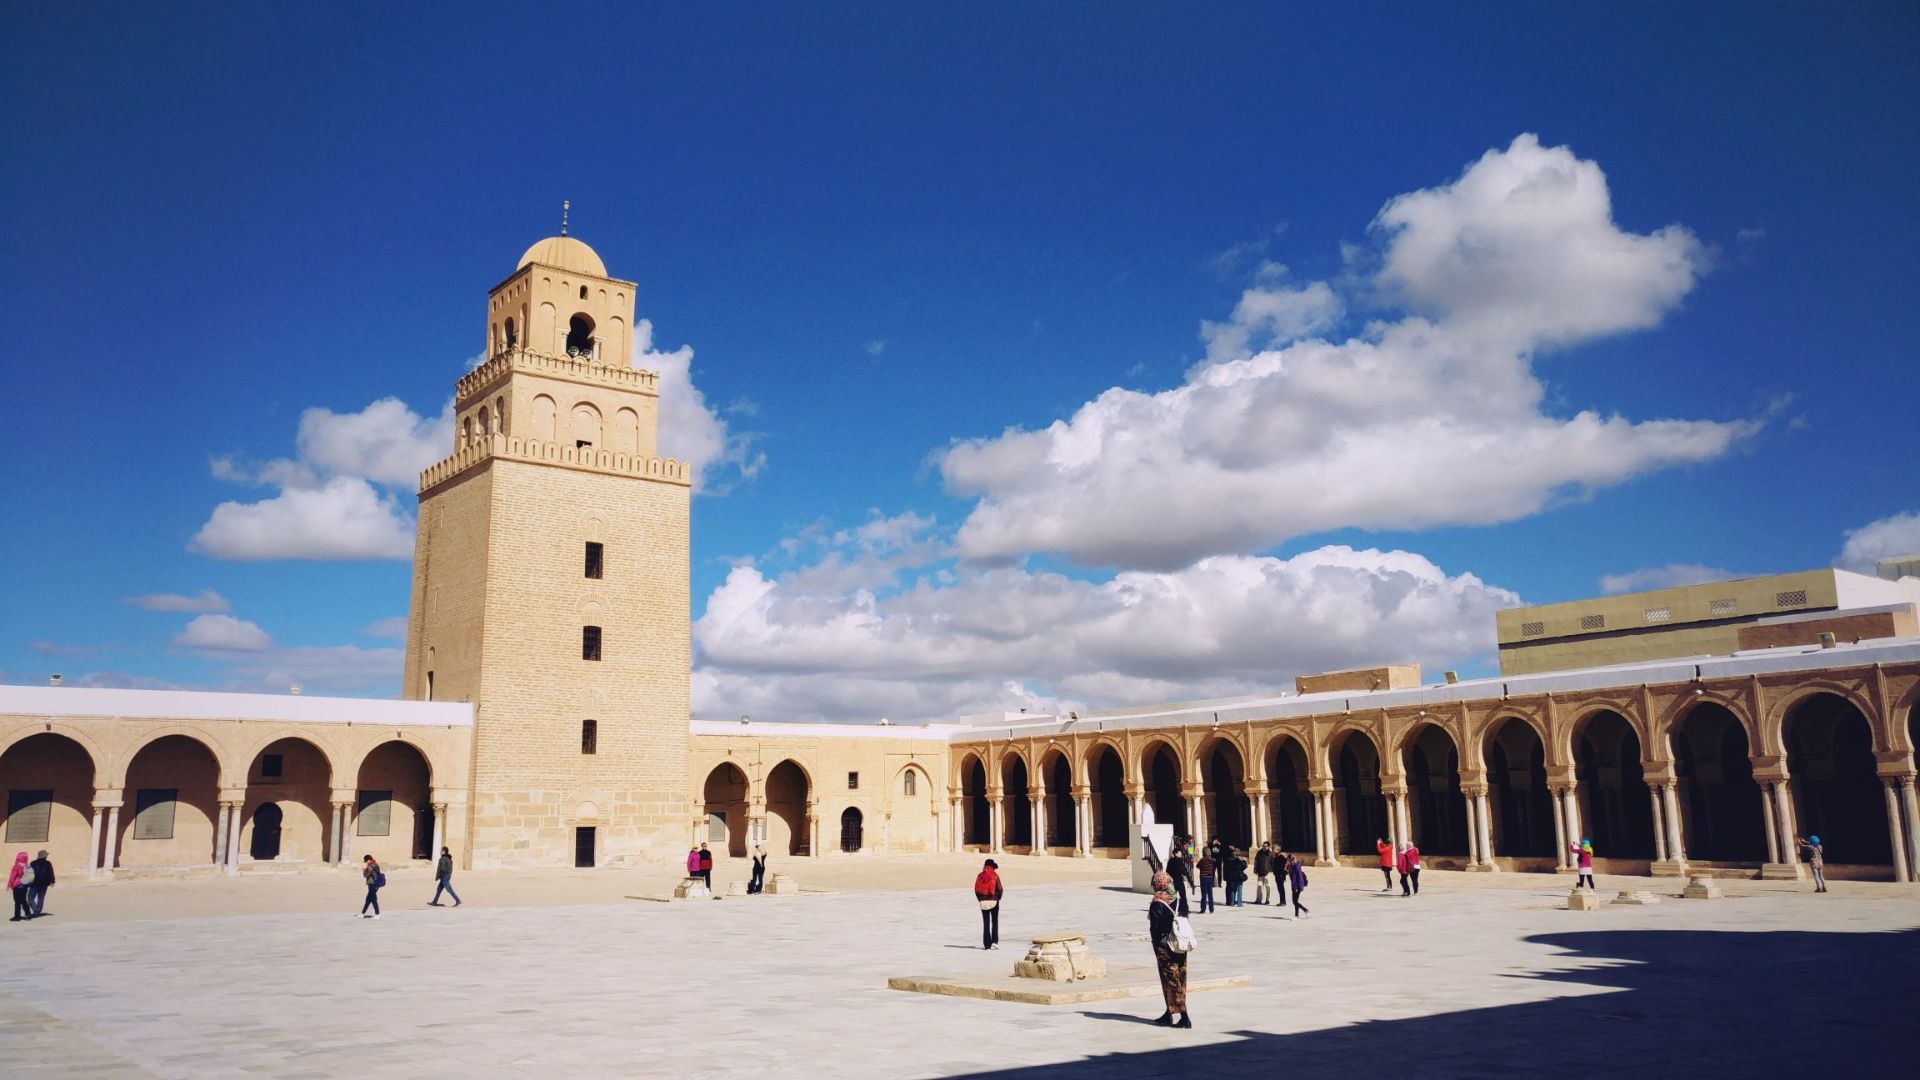 凯鲁万的奥克巴大清真寺又称为“大清真寺”，是伊斯兰教在北非建立的第一座最大的清真寺。寺院长130米，